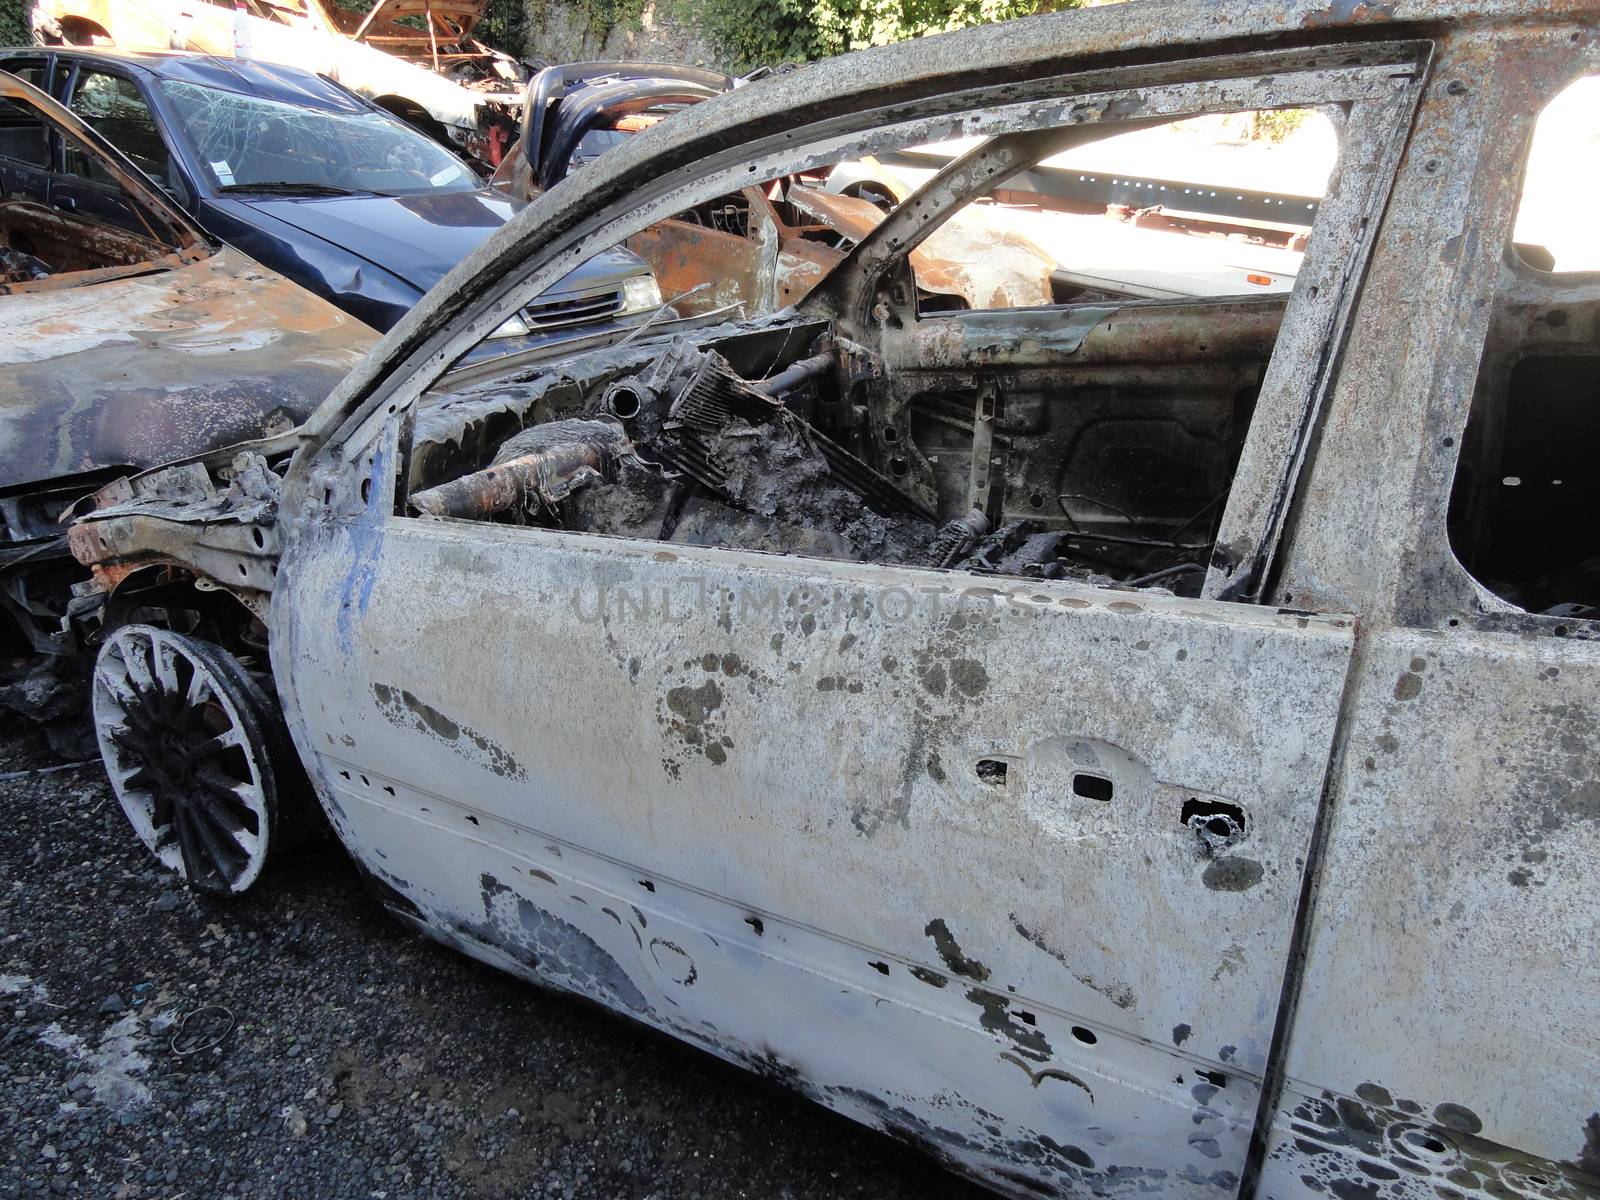 Poissy, France - October 11 2010: Burned French Sport Car Parked outside a Garage. Stolen and Burned Renault Megane RS